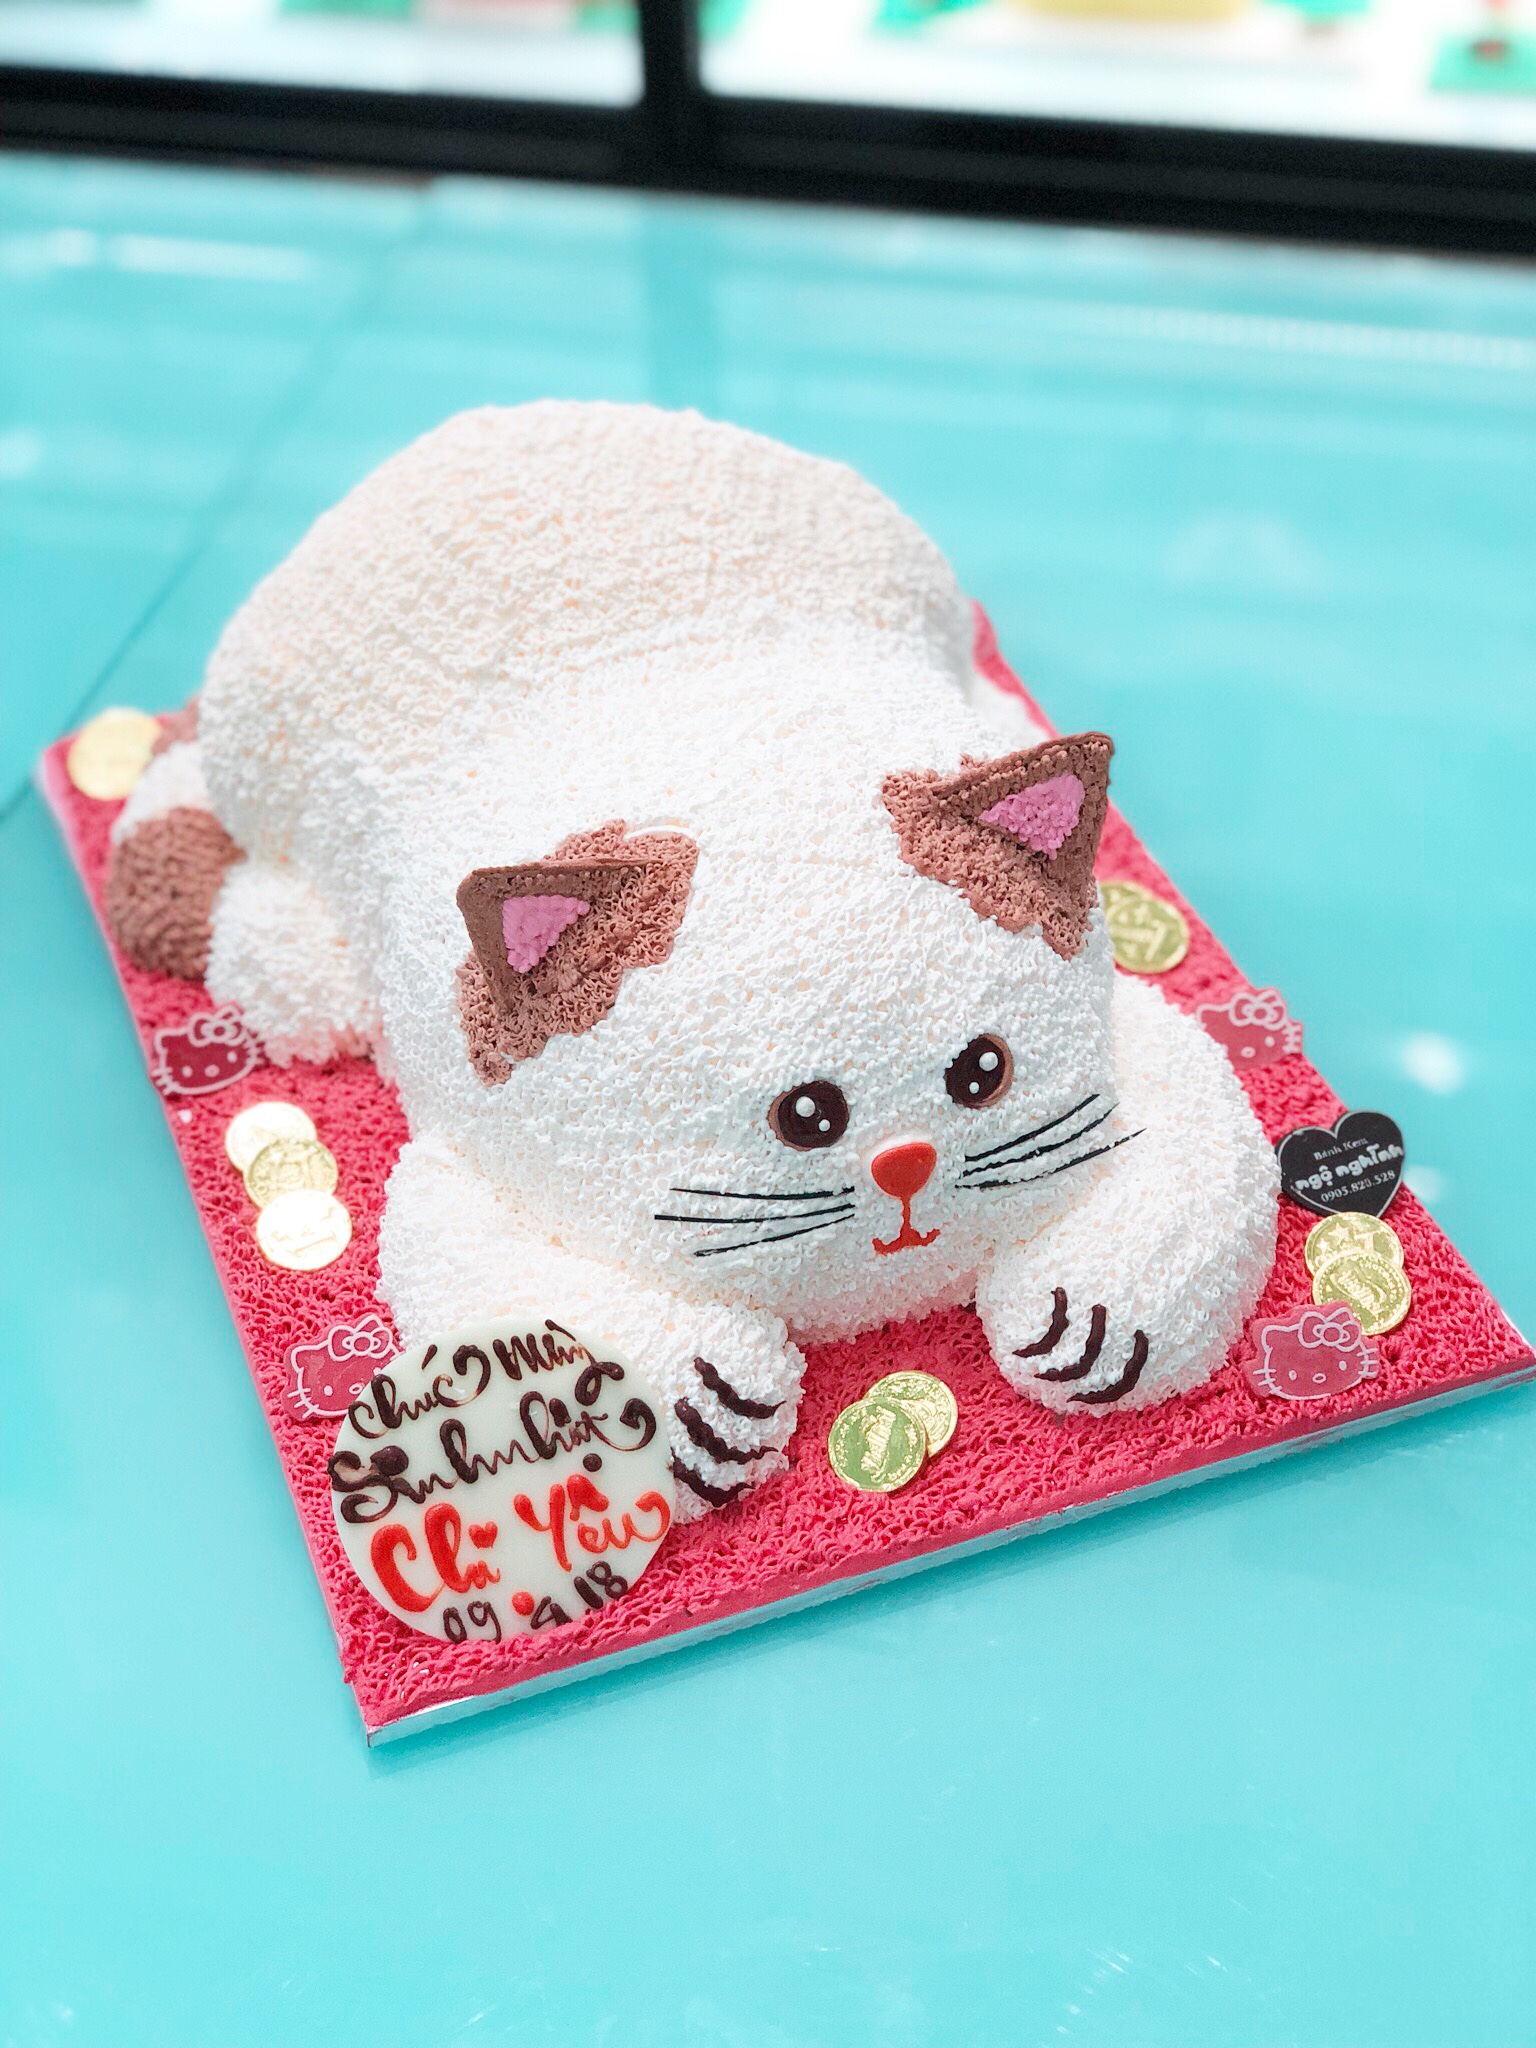 Bánh sinh nhật 3D con mèo là tác phẩm nghệ thuật kì diệu mà bạn không thể bỏ qua trong bữa tiệc sinh nhật của mình. Với thiết kế độc đáo và trang trí tinh tế, món bánh này chắc chắn sẽ làm bữa tiệc của bạn trở nên thật ấn tượng.